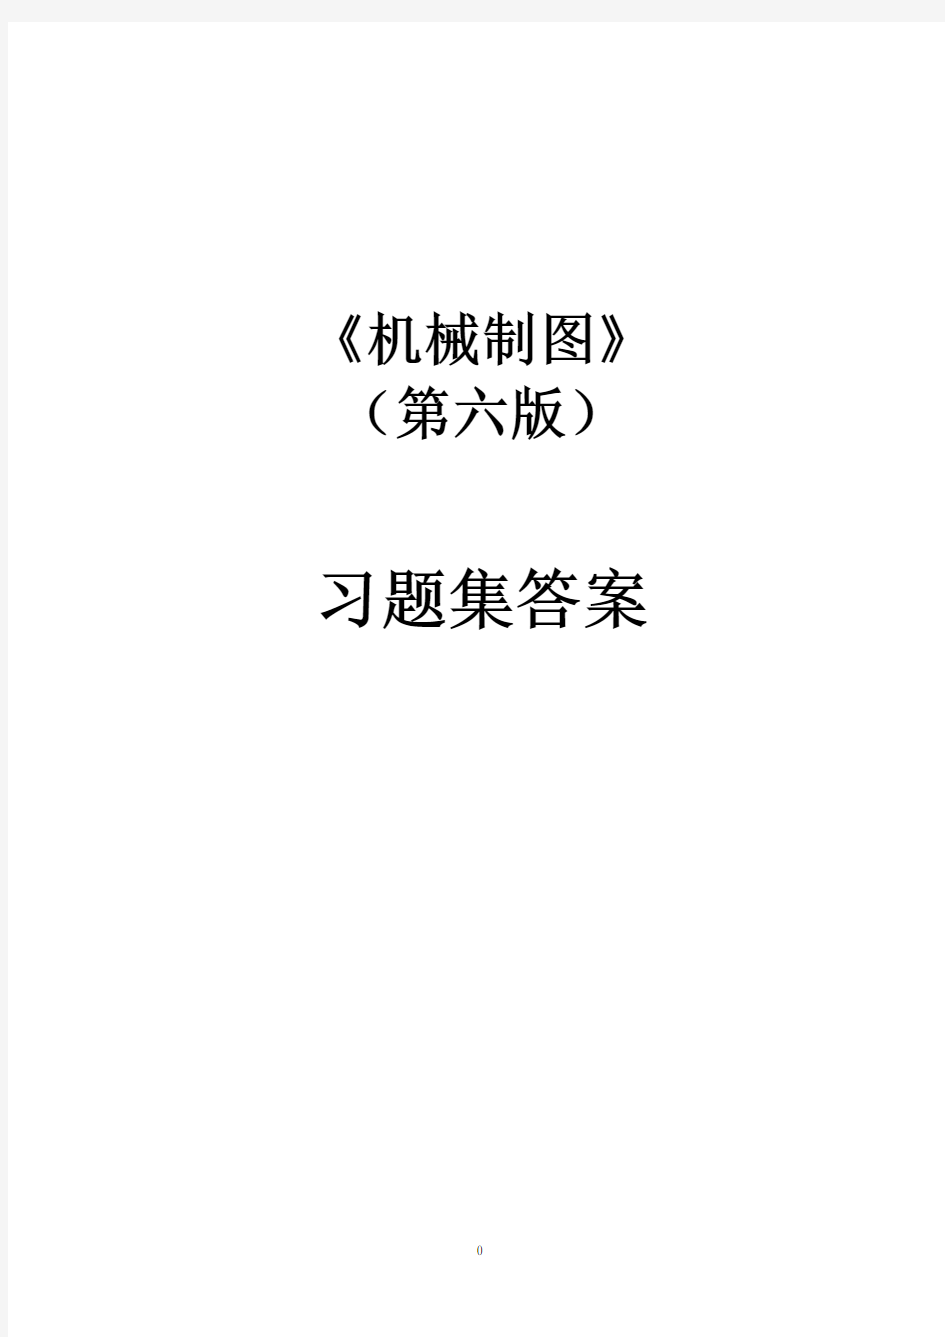 同济大学 机械制图习题集第六版.pdf